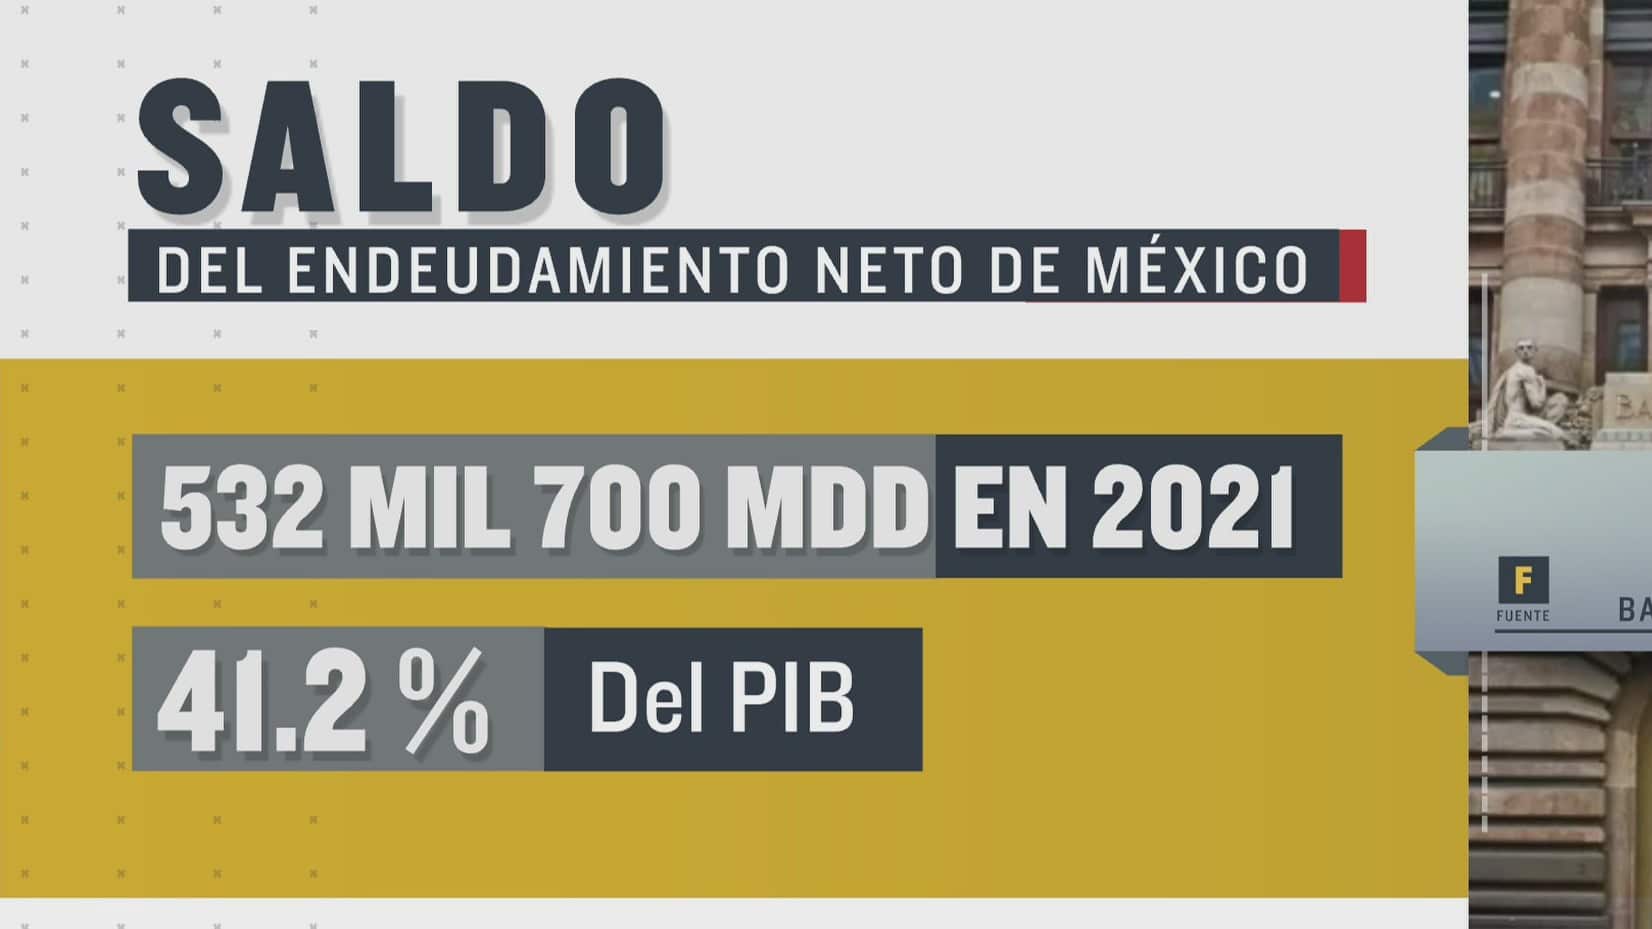 saldo de endeudamiento neto de mexico fue de 532700 mdd en 2021 banxico